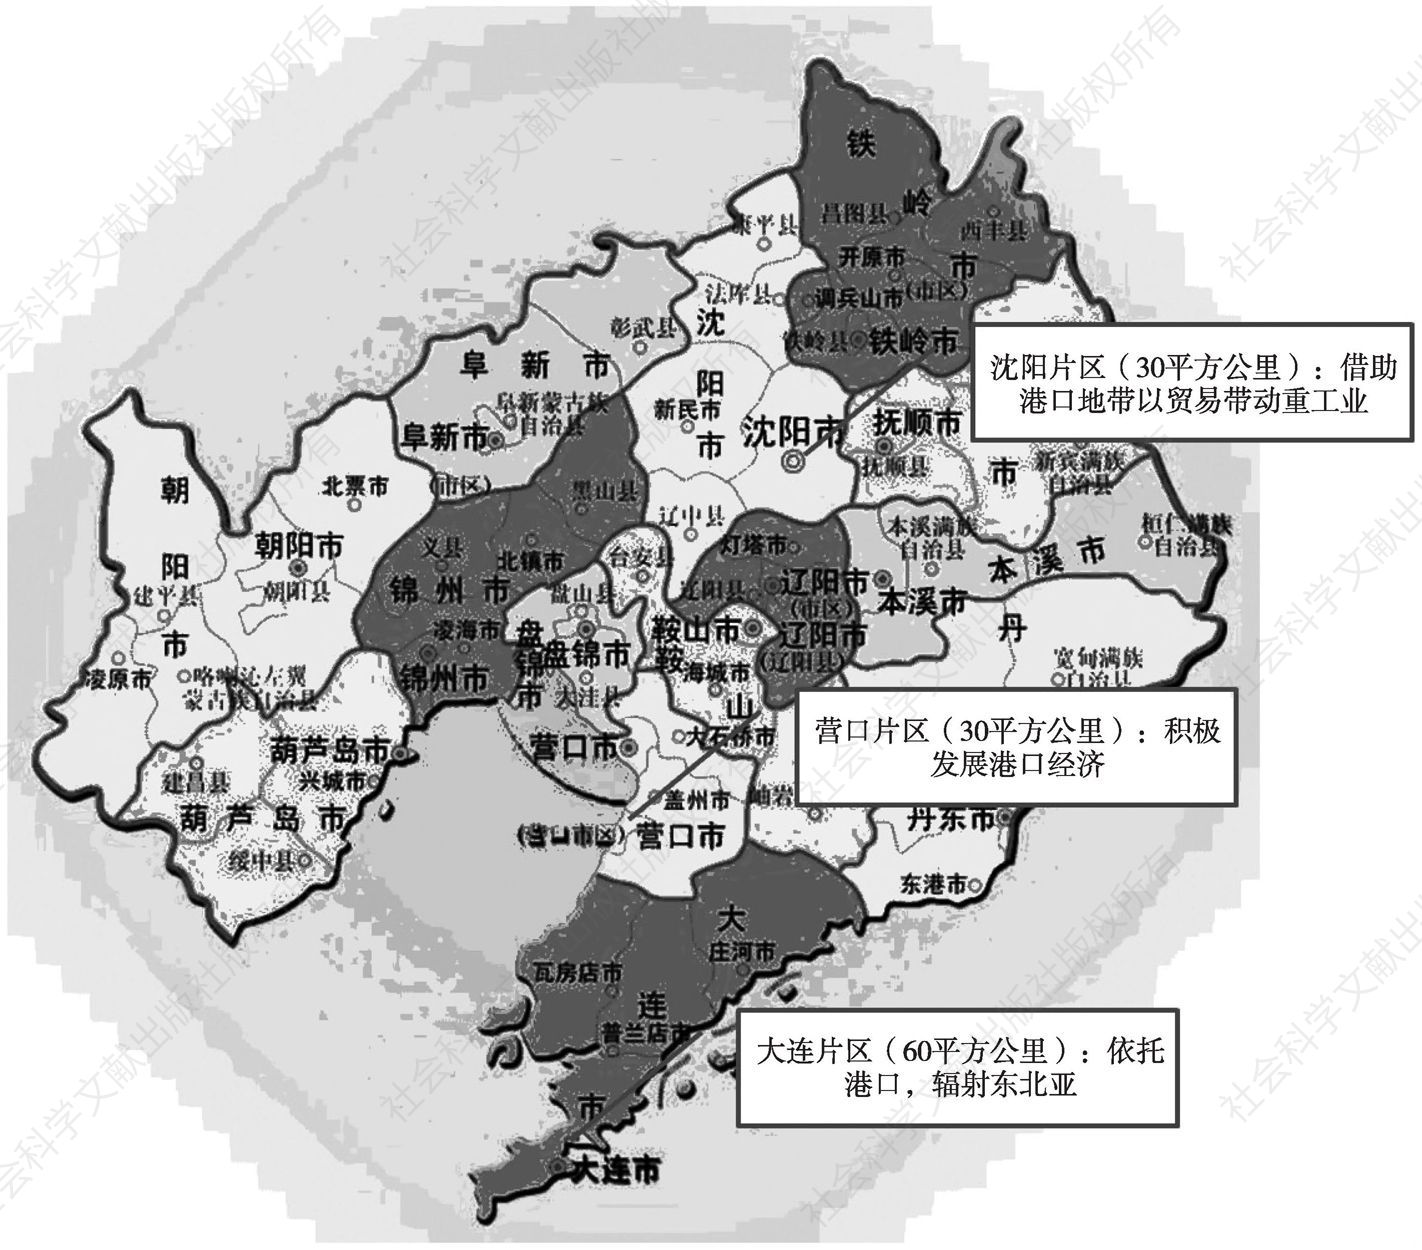 图2 辽宁自贸试验区片区